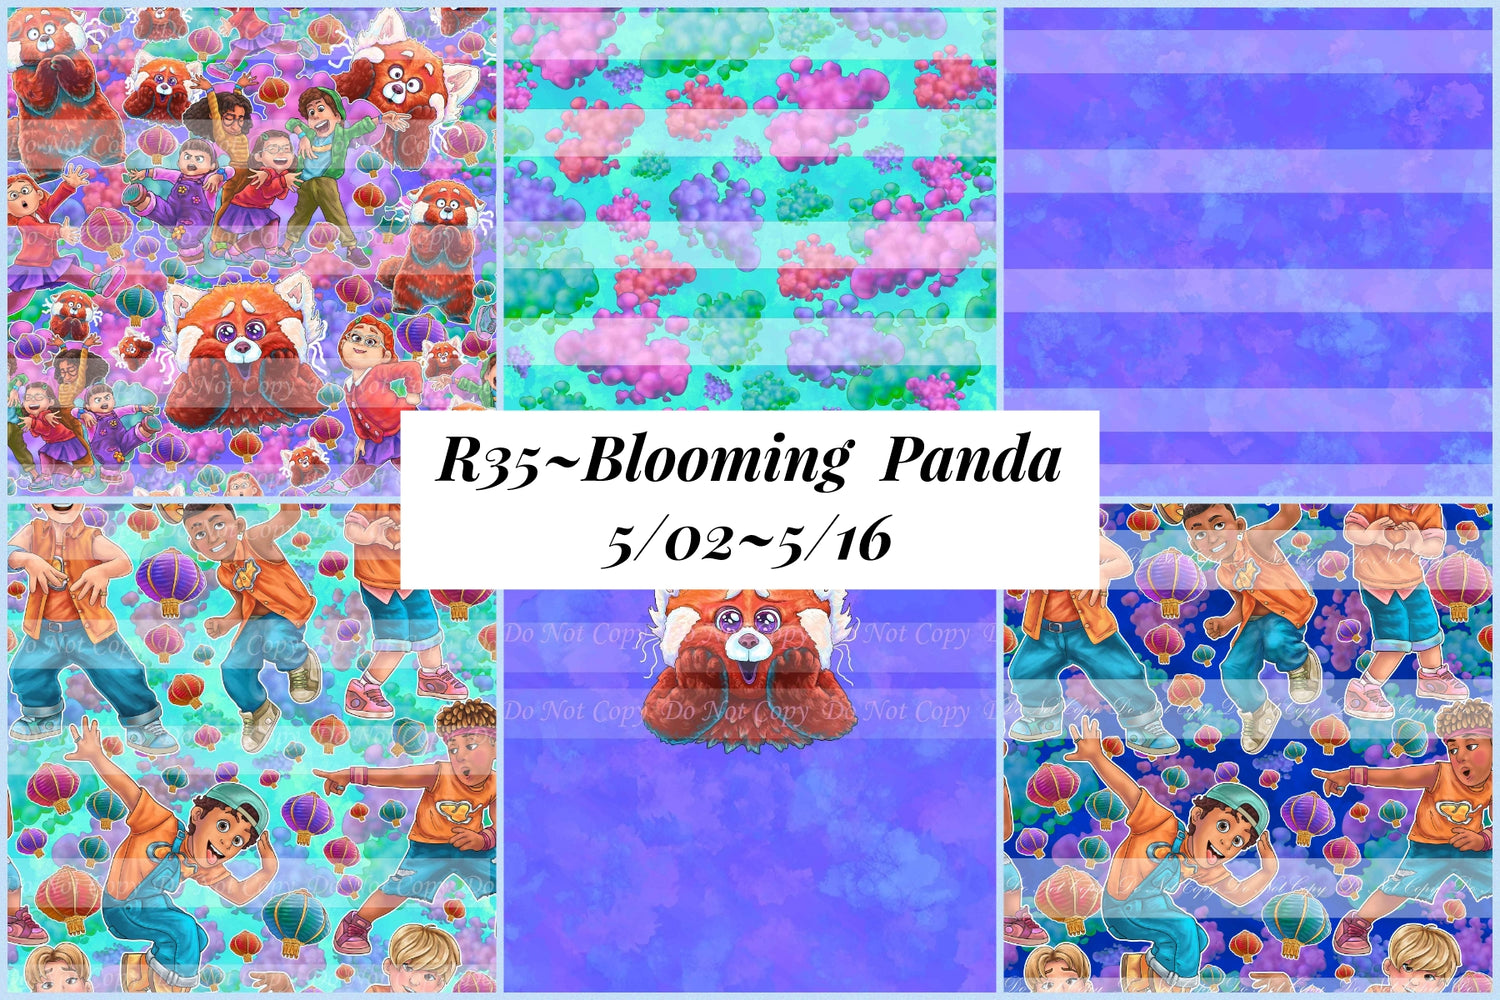 Preorder R35 Blooming Panda